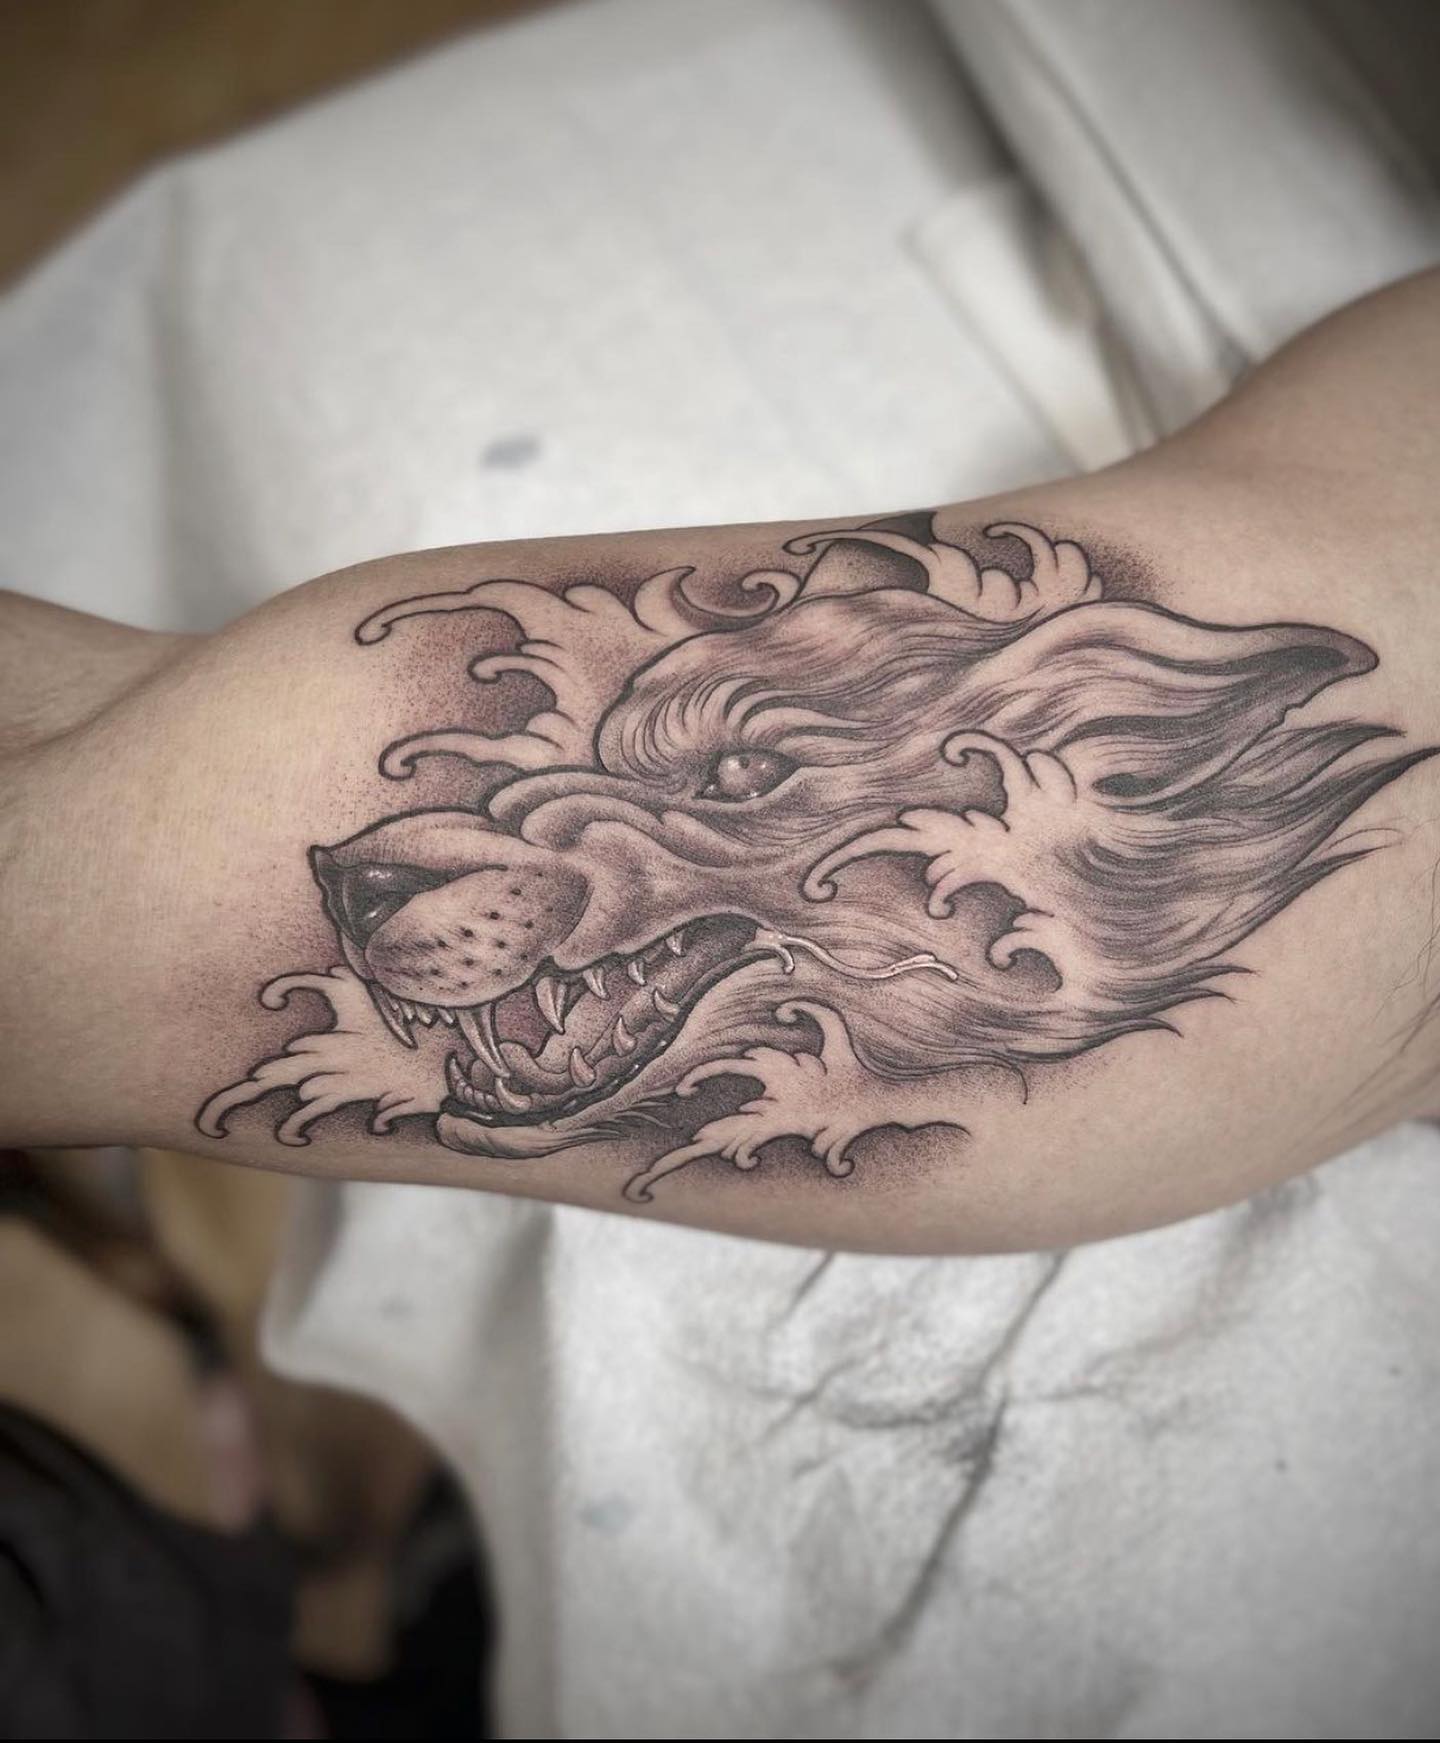 Tatuaje de lobo negro en el brazo.